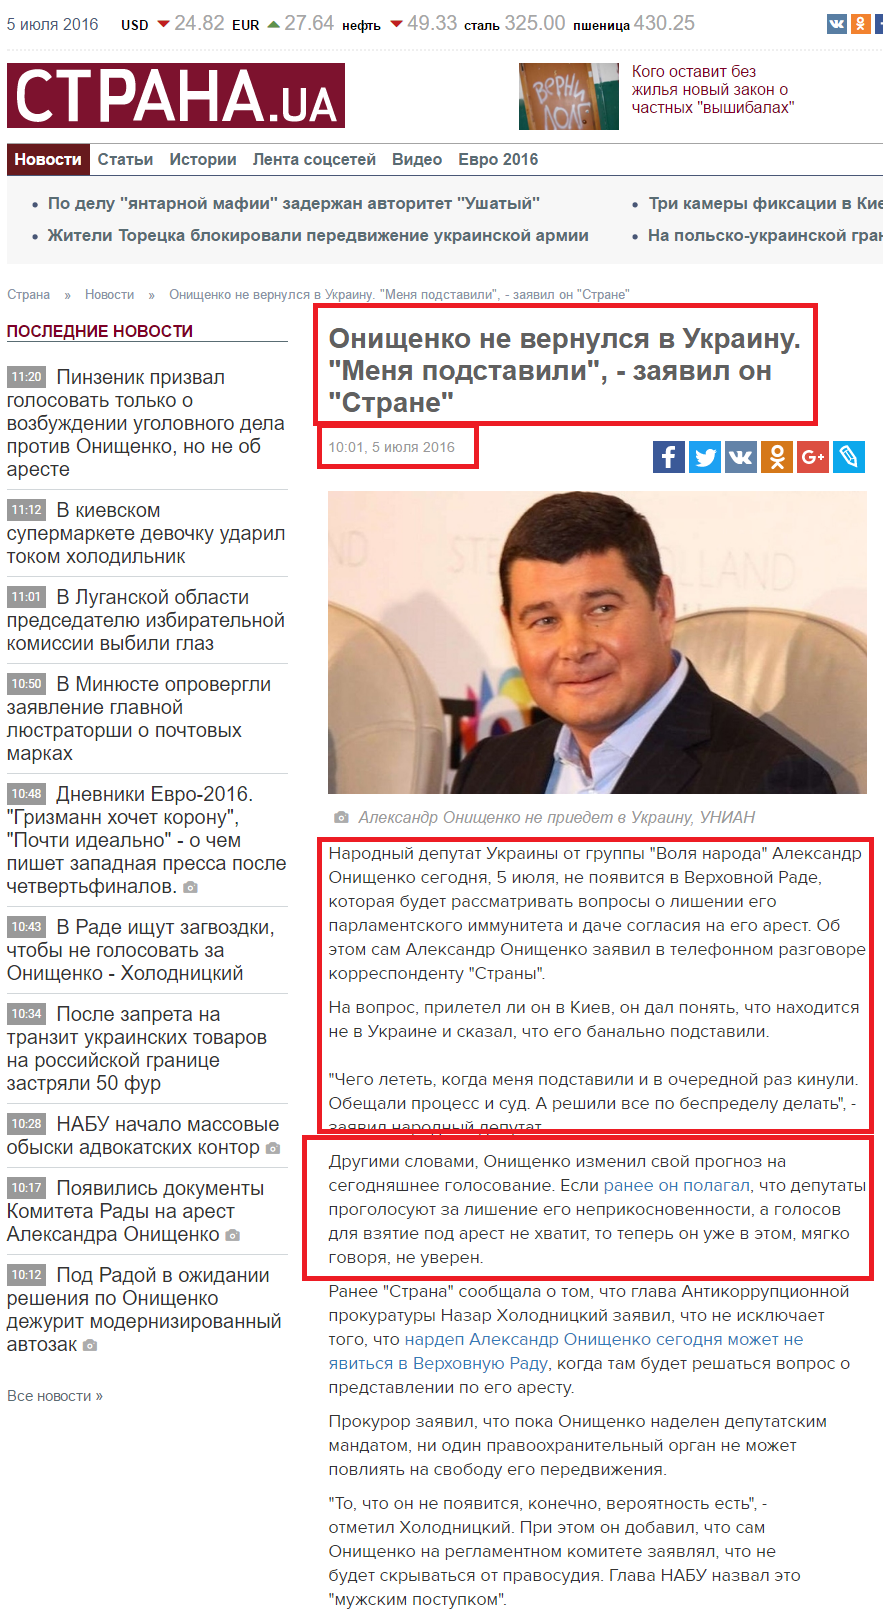 http://strana.ua/news/21211-onishenko-ne-prijdet-v-radu-i-zayavil-strane-chto-ego-podstavili.html